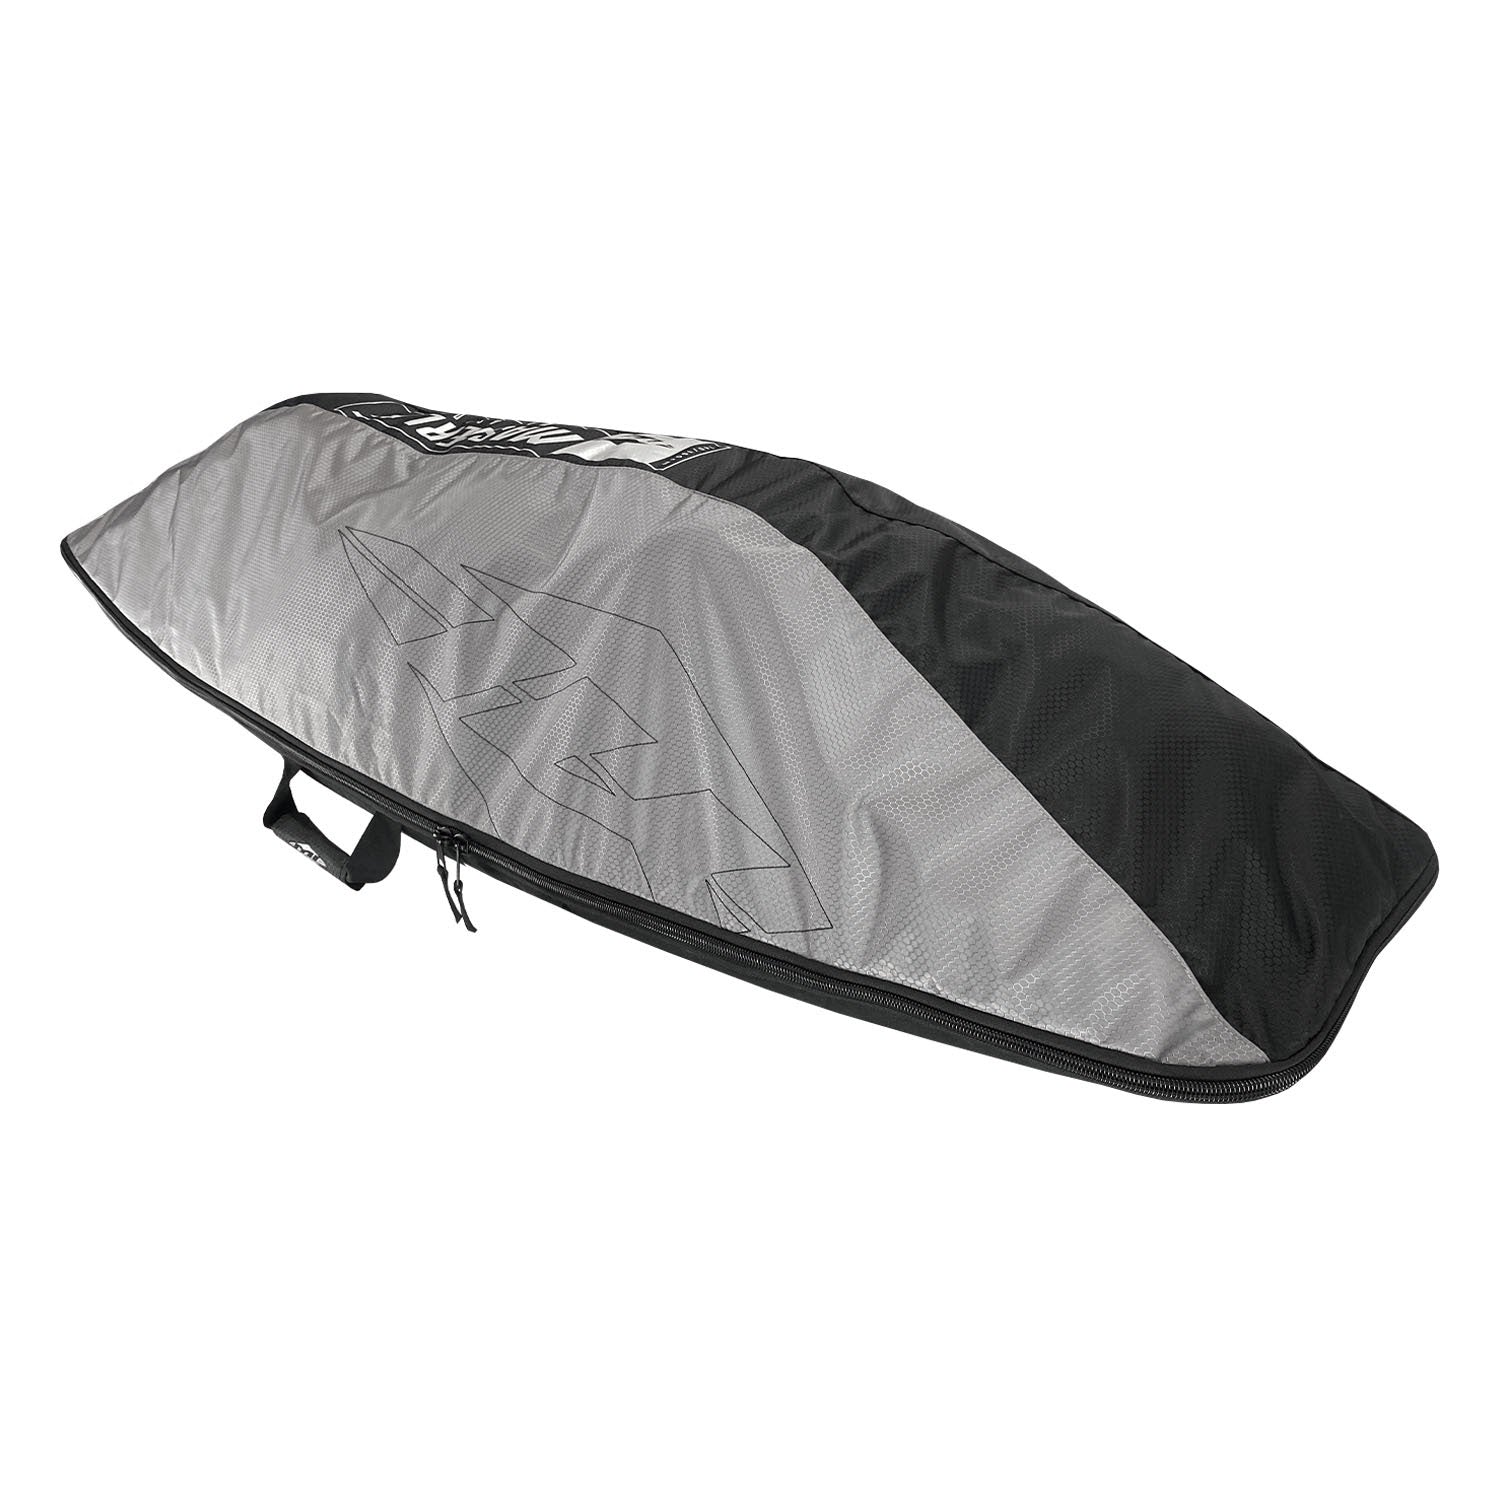 Masterline 140/160cm Standard Wakeboard Bag